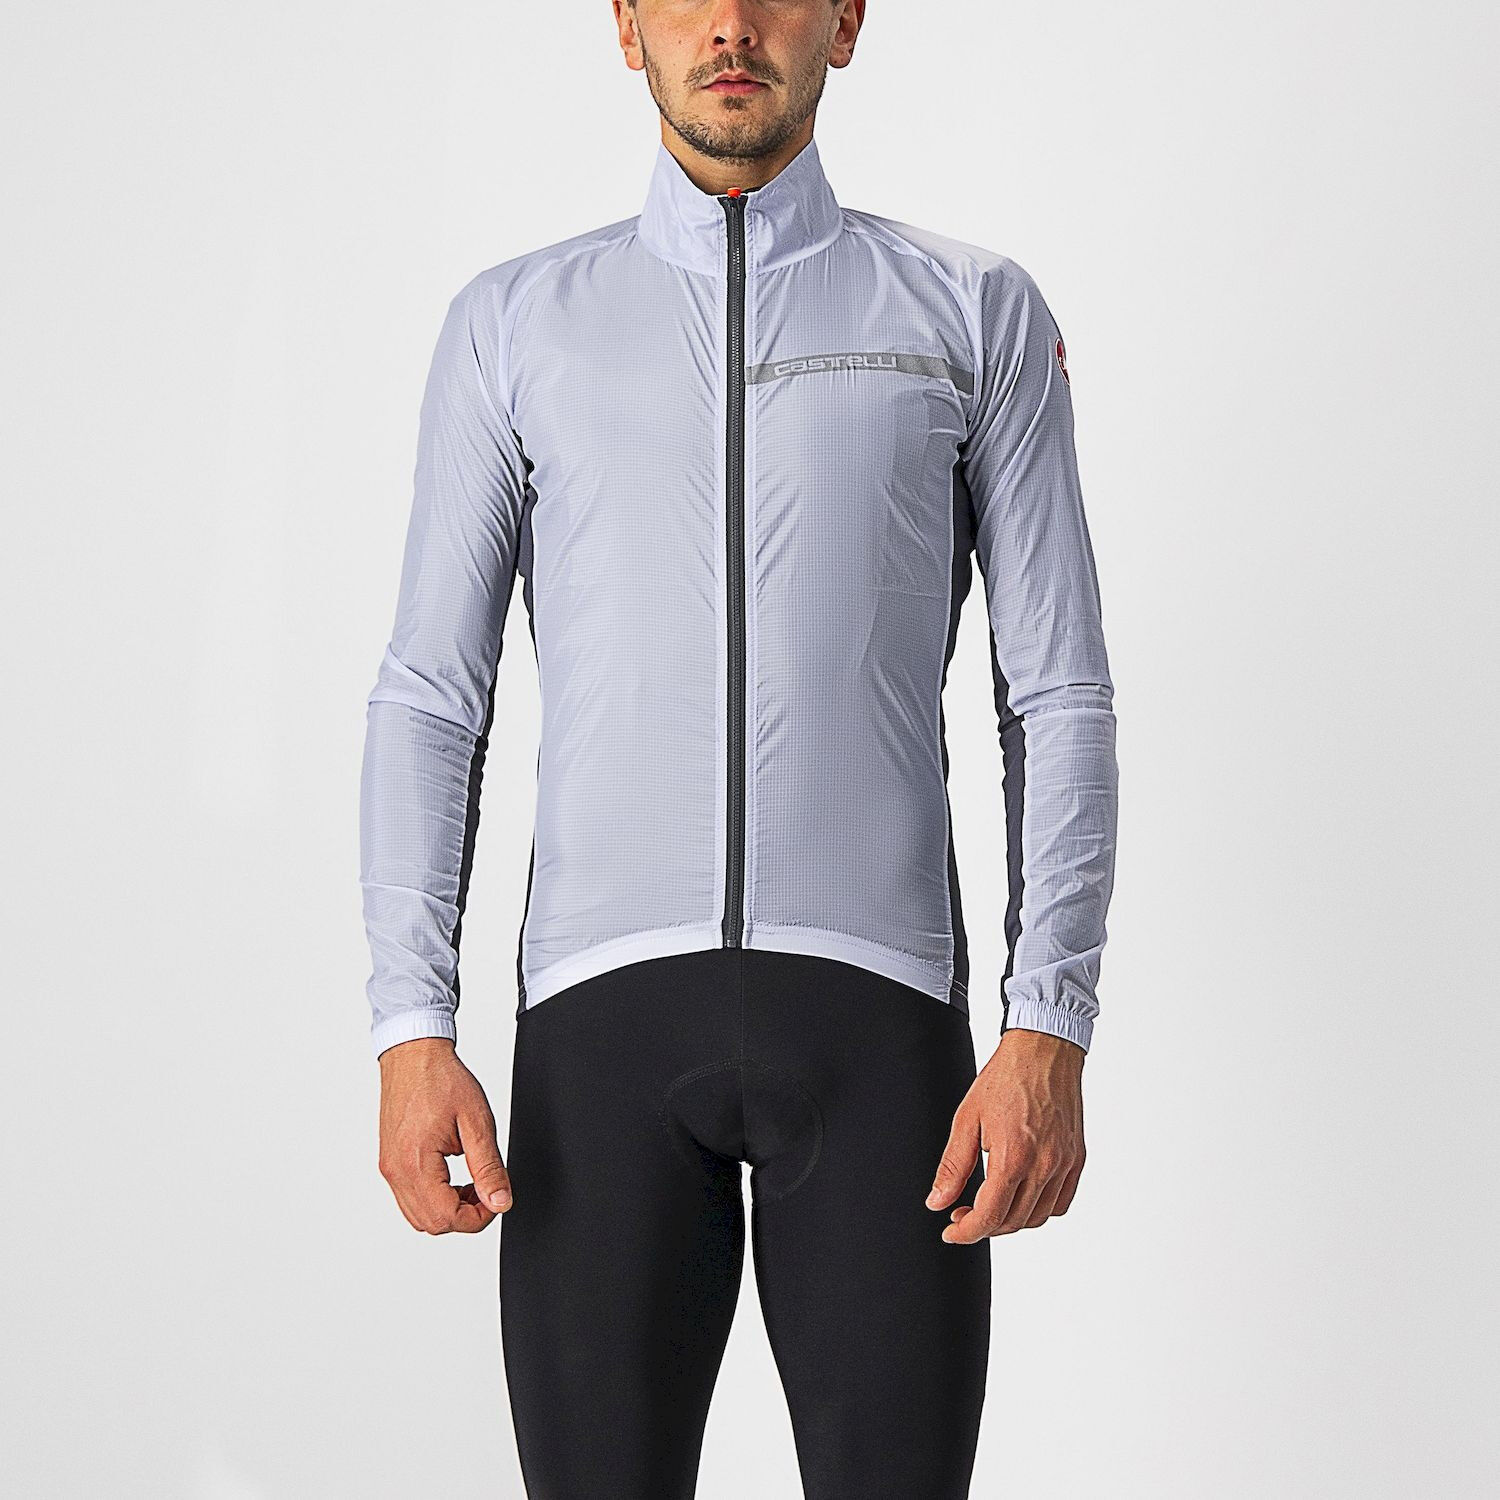 Castelli Squadra Stretch Jacket - Giacca a vento ciclismo - Uomo